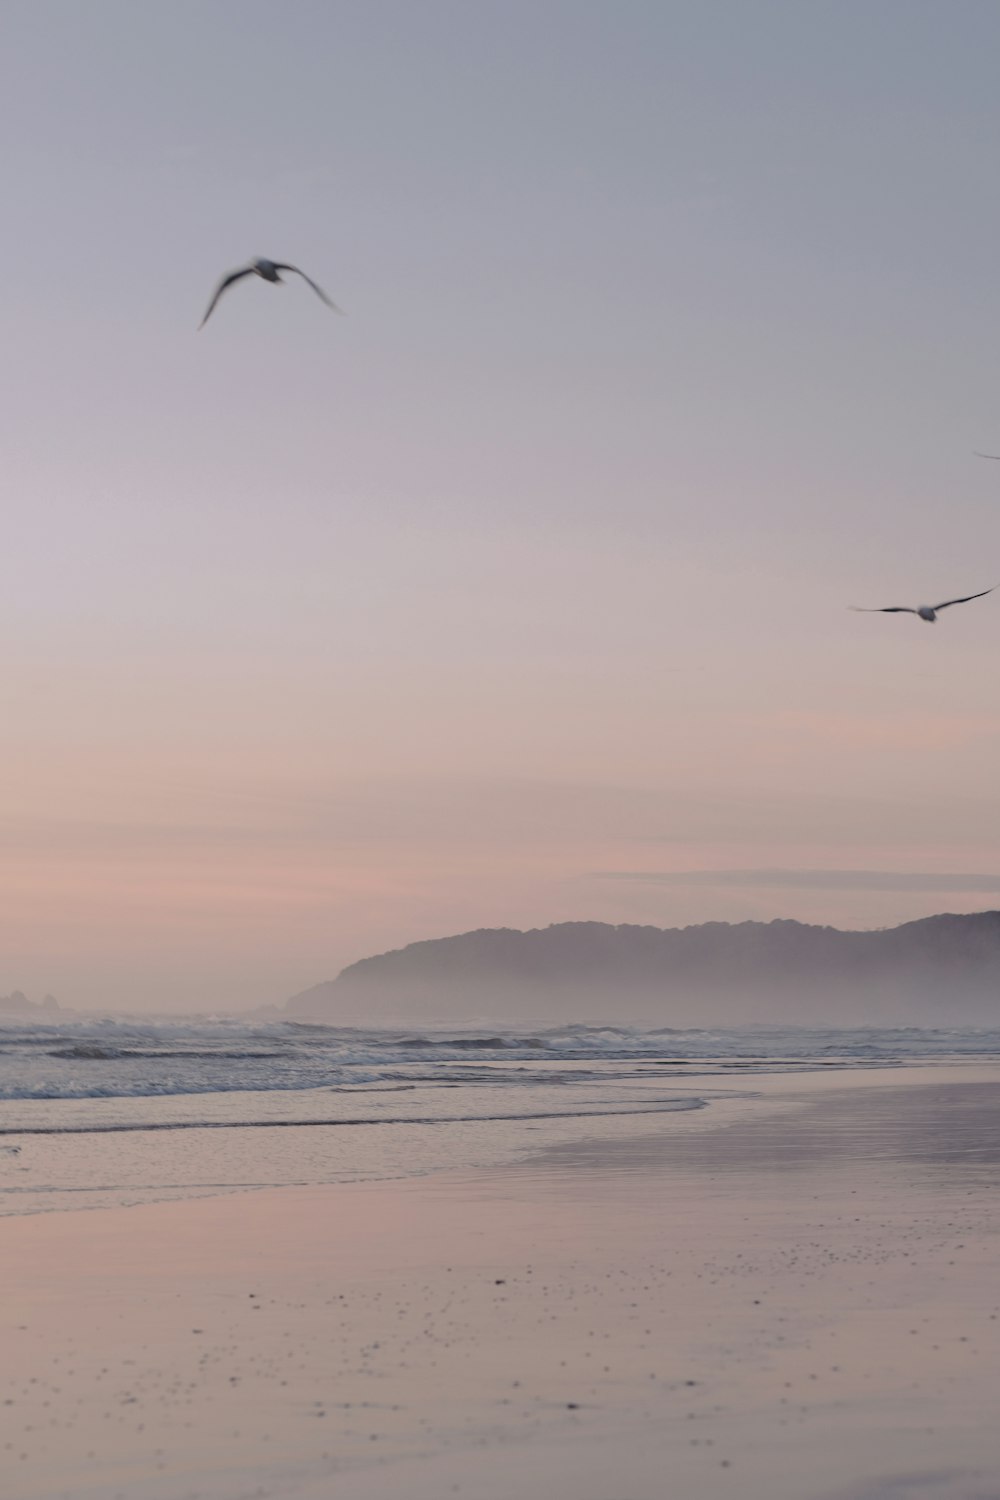 pássaros voando sobre o mar durante o pôr do sol